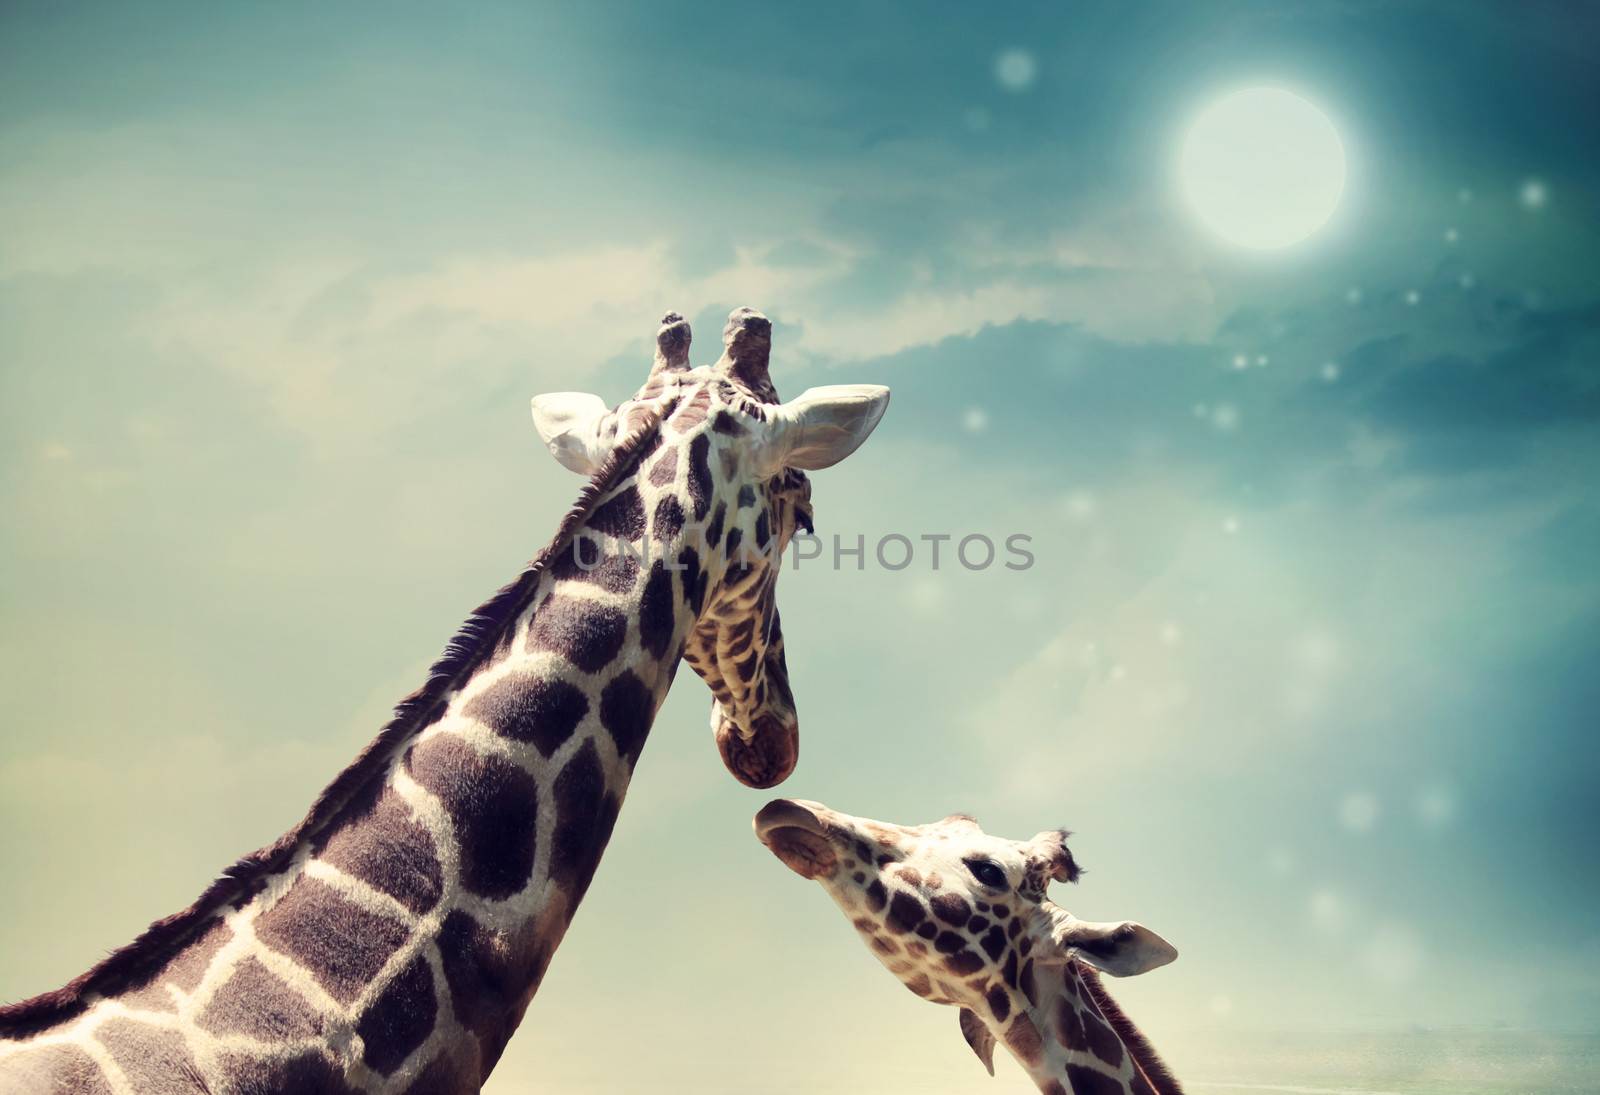 Giraffes in friendship or love concept image by melpomene